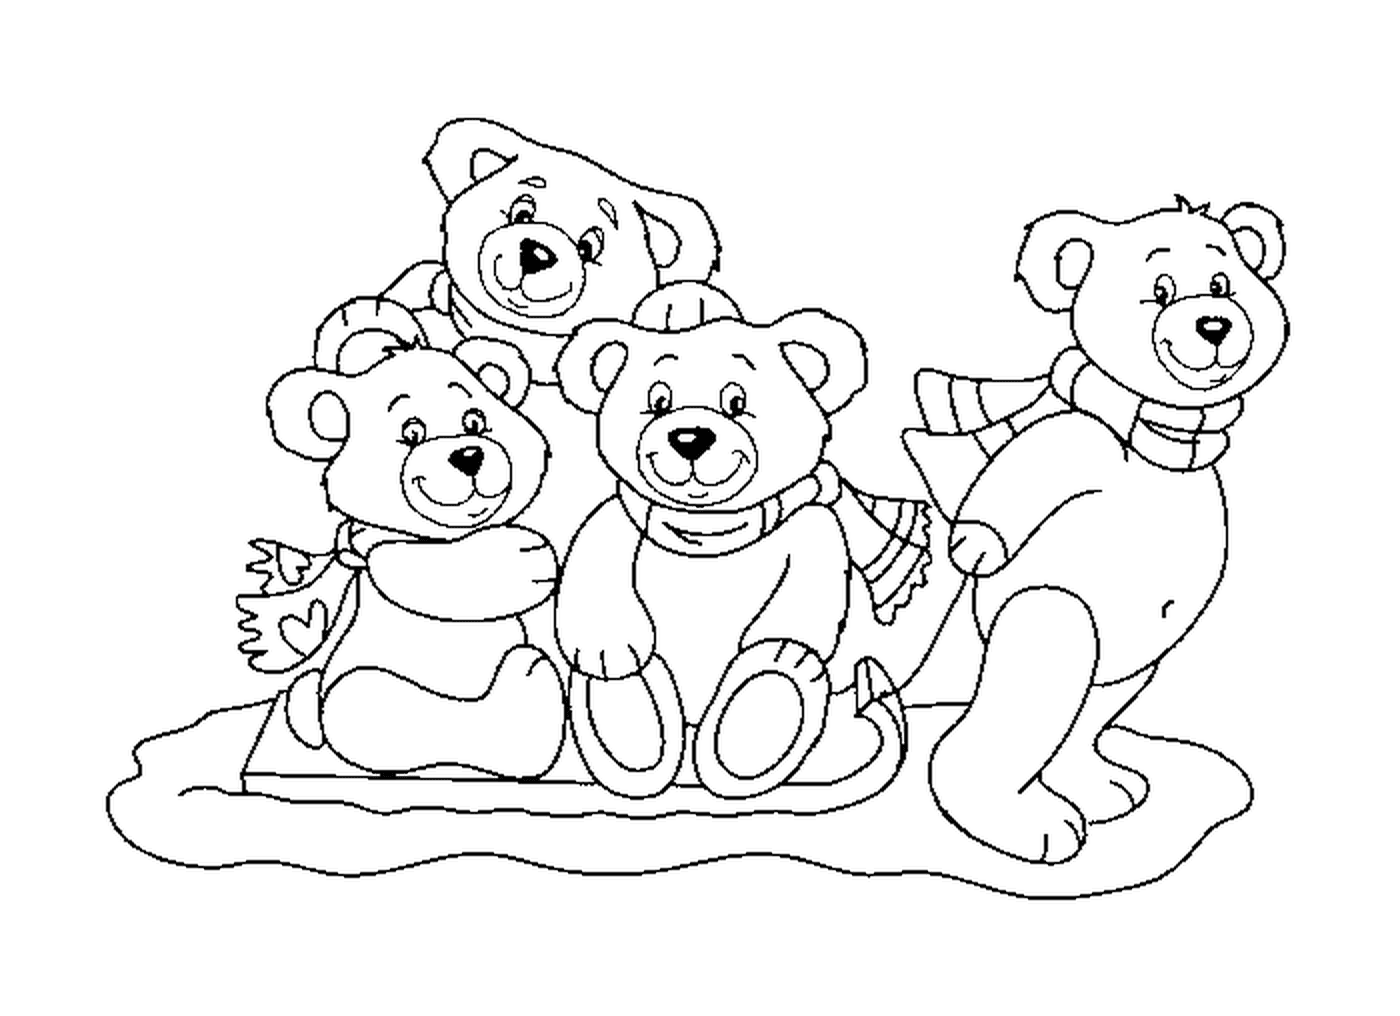  Семья медведей 